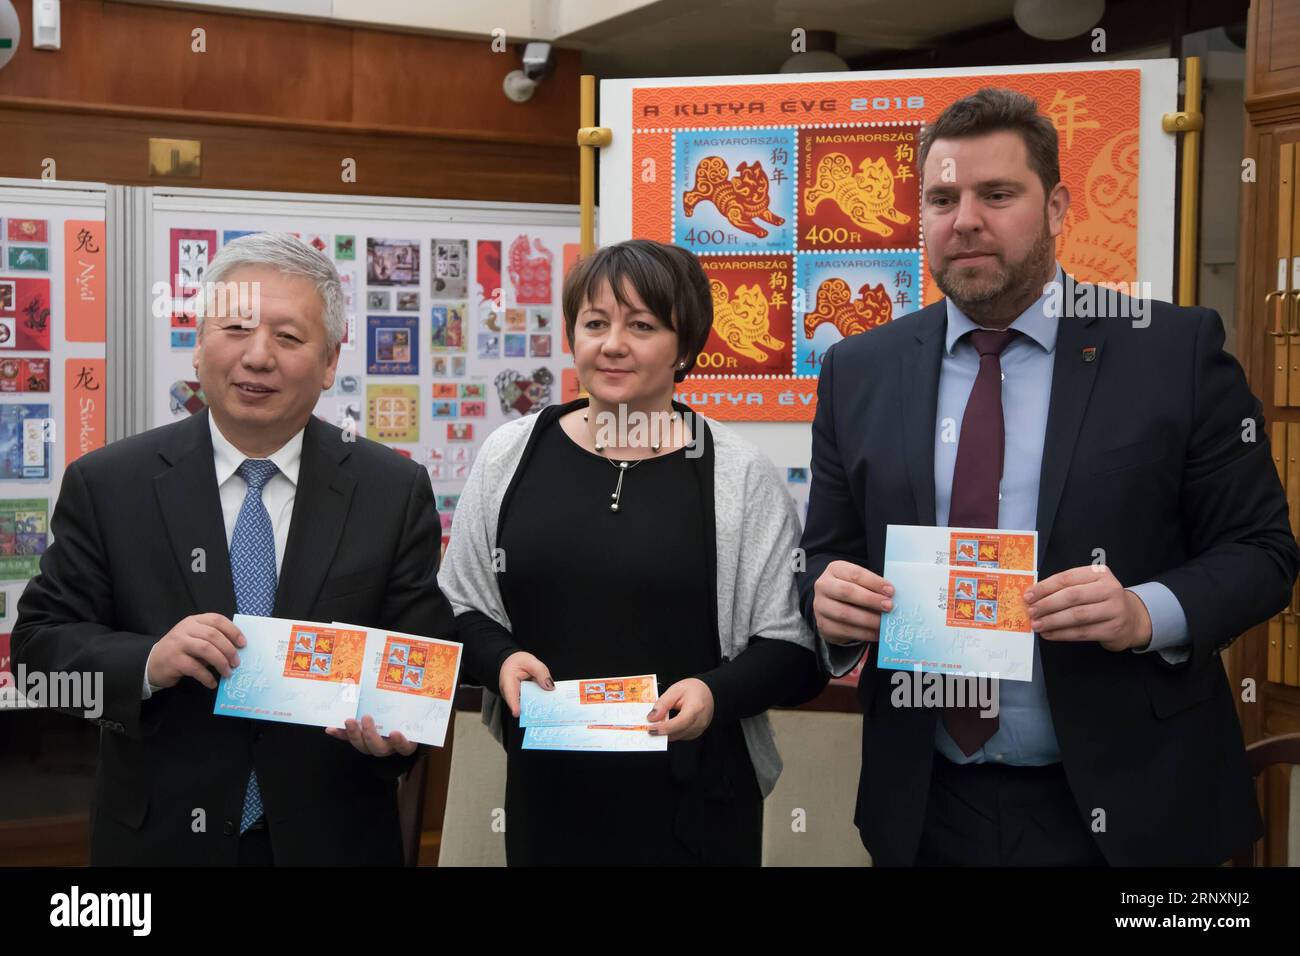 (180207) -- BUDAPEST, 7 février 2018 -- l'ambassadeur de Chine en Hongrie Duan Jielong (G), Juhasz Edit (C), secrétaire d'État adjoint au ministère du développement national de la Hongrie, et Zoltan Illes, président-directeur général de la poste hongroise, posent pour une photo avec les couvertures du premier jour qu'ils ont dédicacées au Musée hongrois du timbre à Budapest, Hongrie, le 6 février 2018. Le timbre spécial du zodiaque émis par la poste hongroise en l'honneur de l'année chinoise du chien a été présenté au public mardi au musée hongrois du timbre. Il s'agit de la cinquième édition d'un timbre hongrois commémorant le Banque D'Images